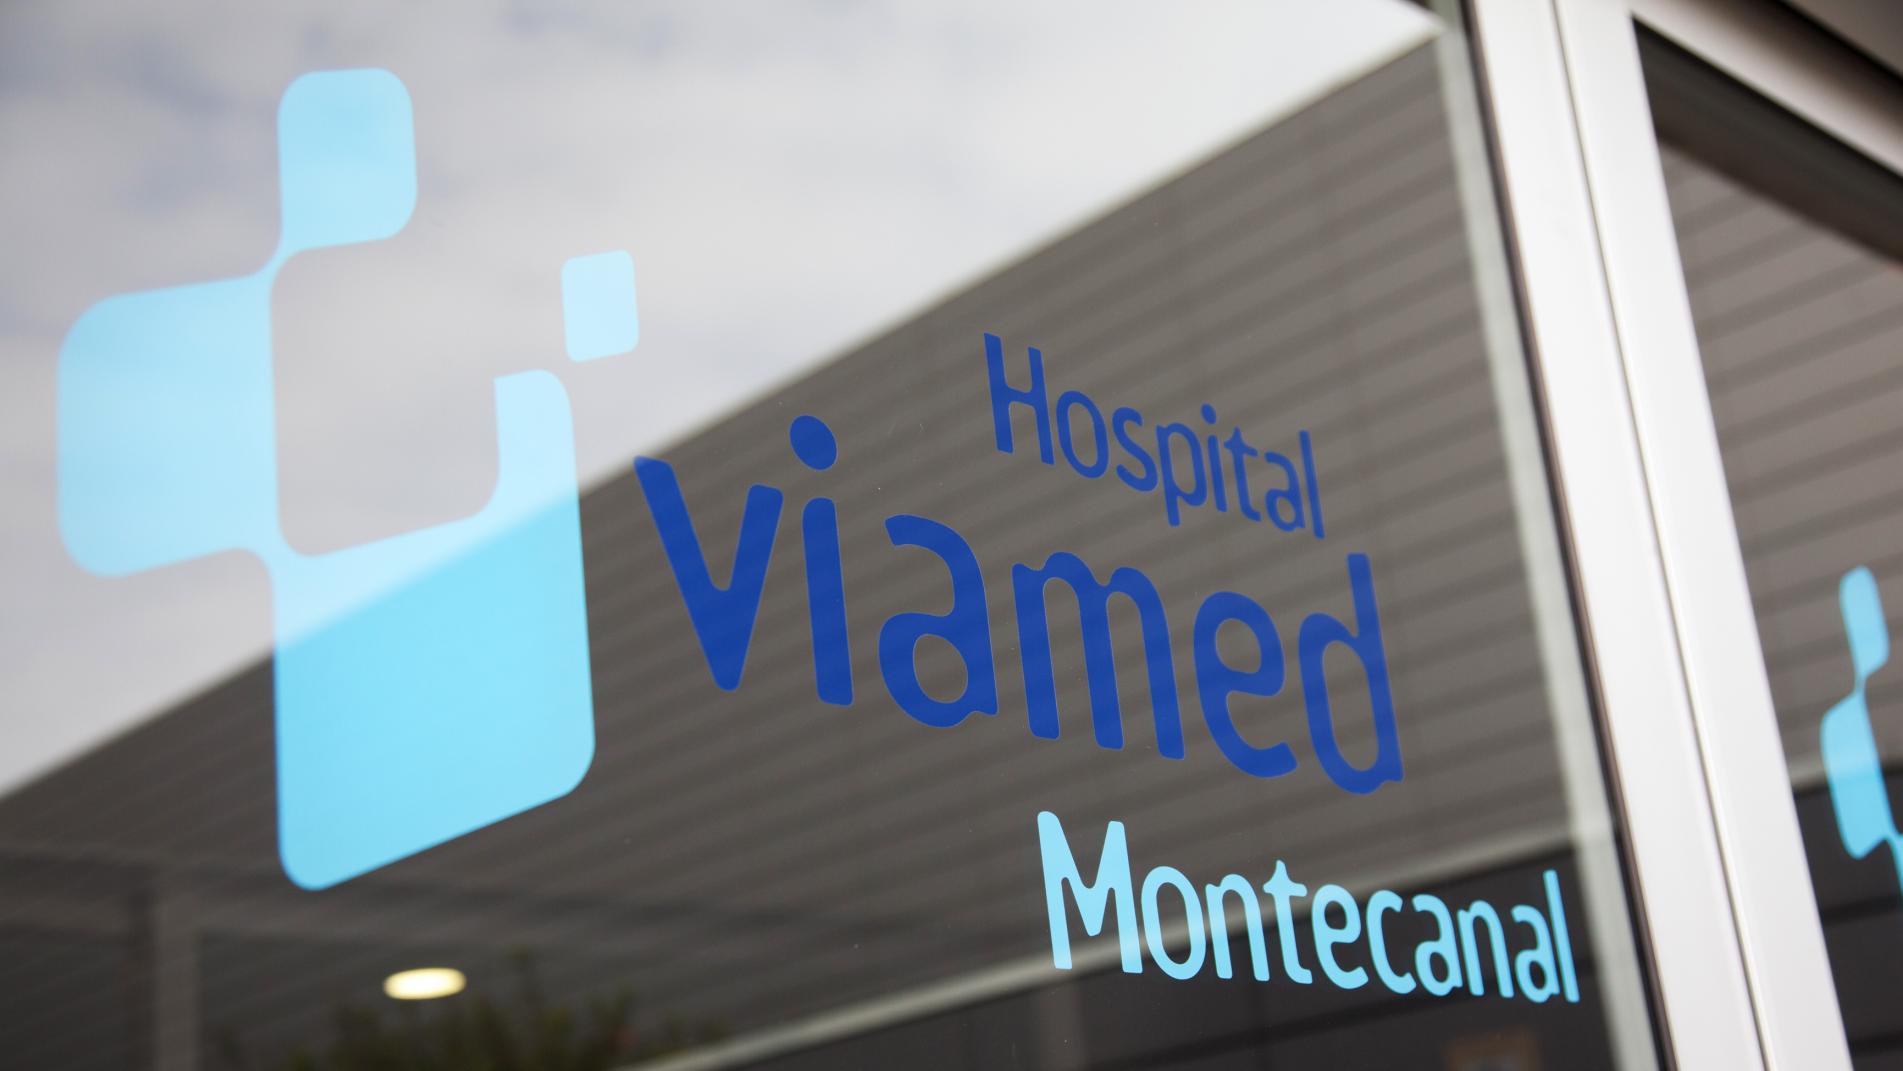 Hospital Viamed Montecanal.